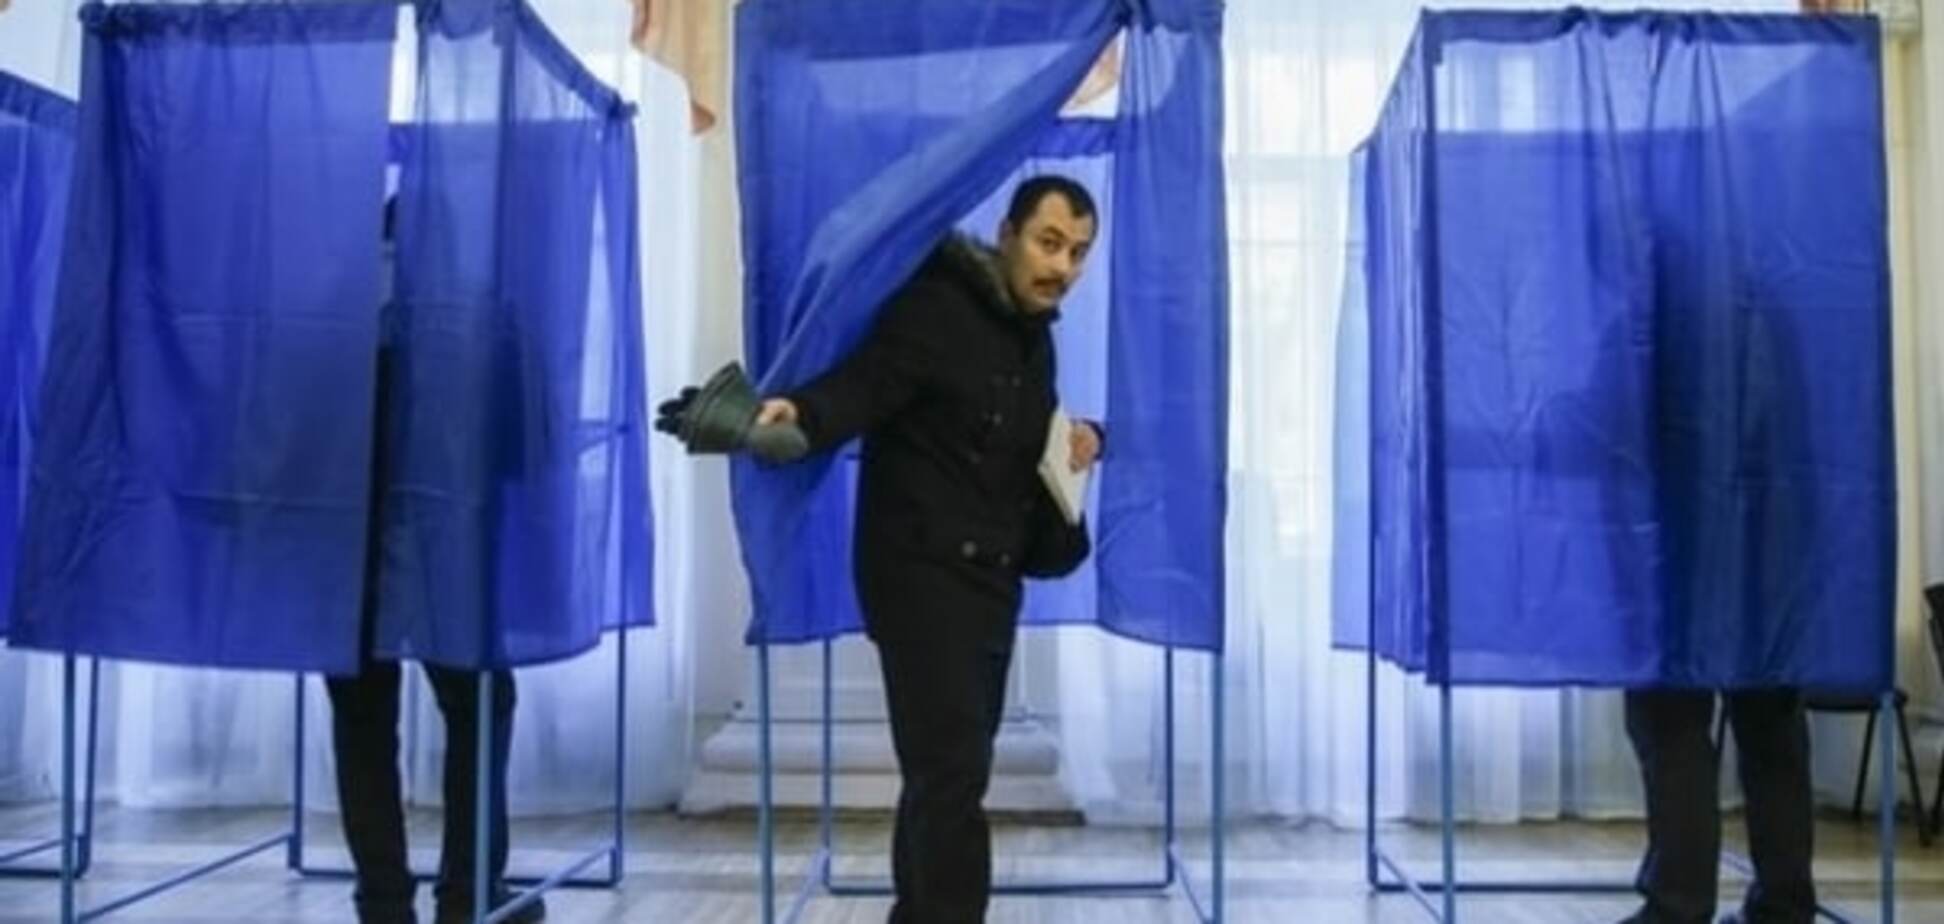 Белоцерковец: аферисты обманом пытаются понизить явку киевлян на выборах мэра во втором туре